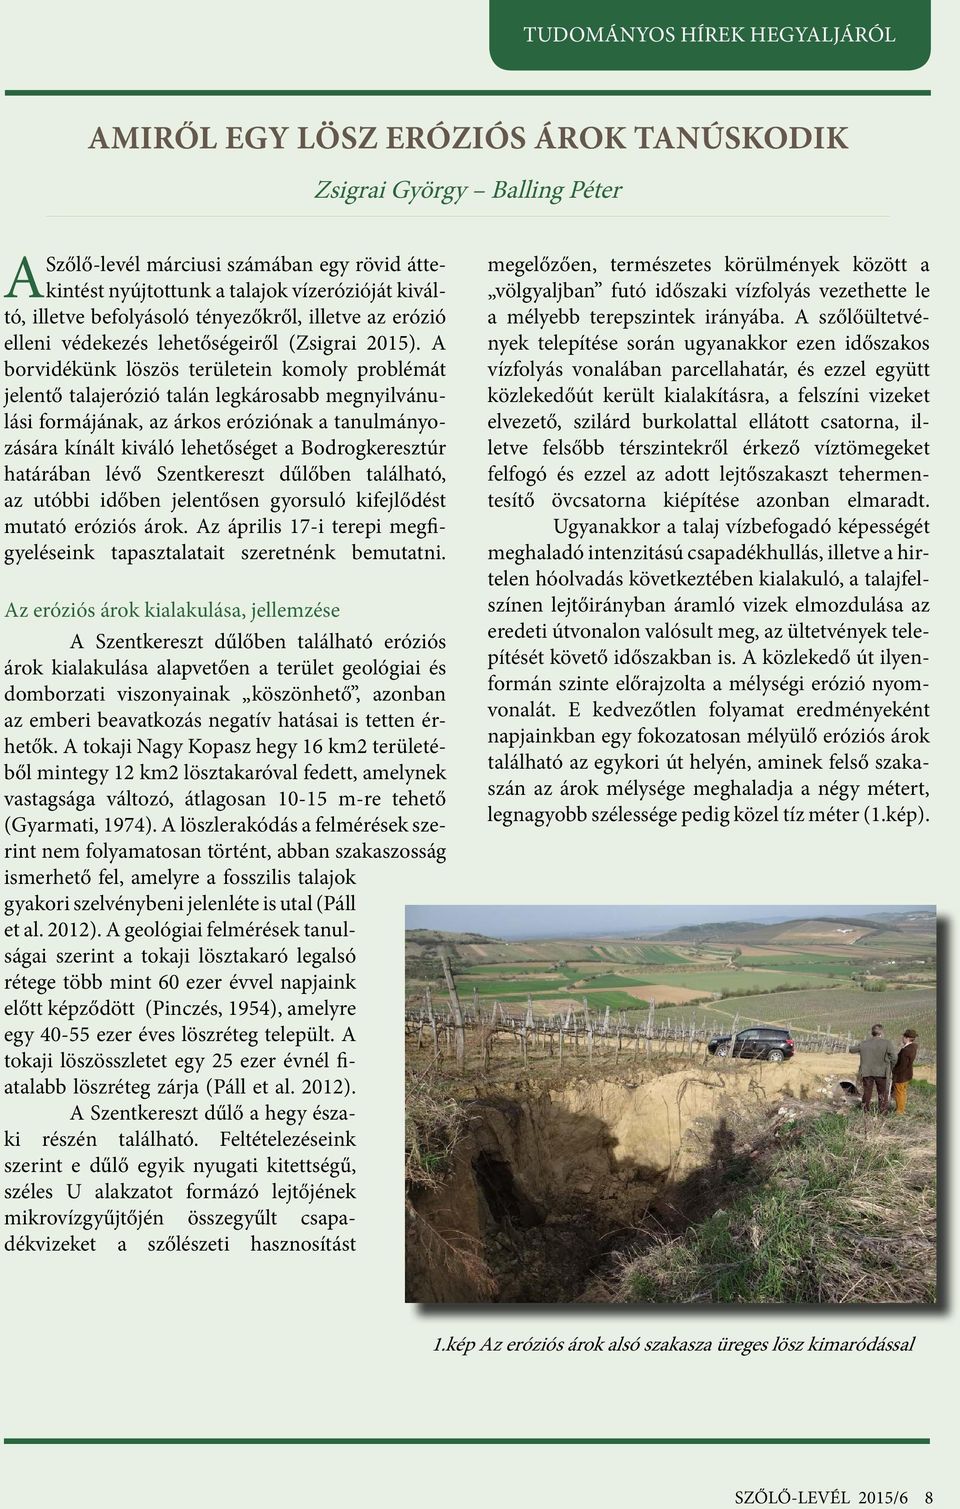 A borvidékünk löszös területein komoly problémát jelentő talajerózió talán legkárosabb megnyilvánulási formájának, az árkos eróziónak a tanulmányozására kínált kiváló lehetőséget a Bodrogkeresztúr